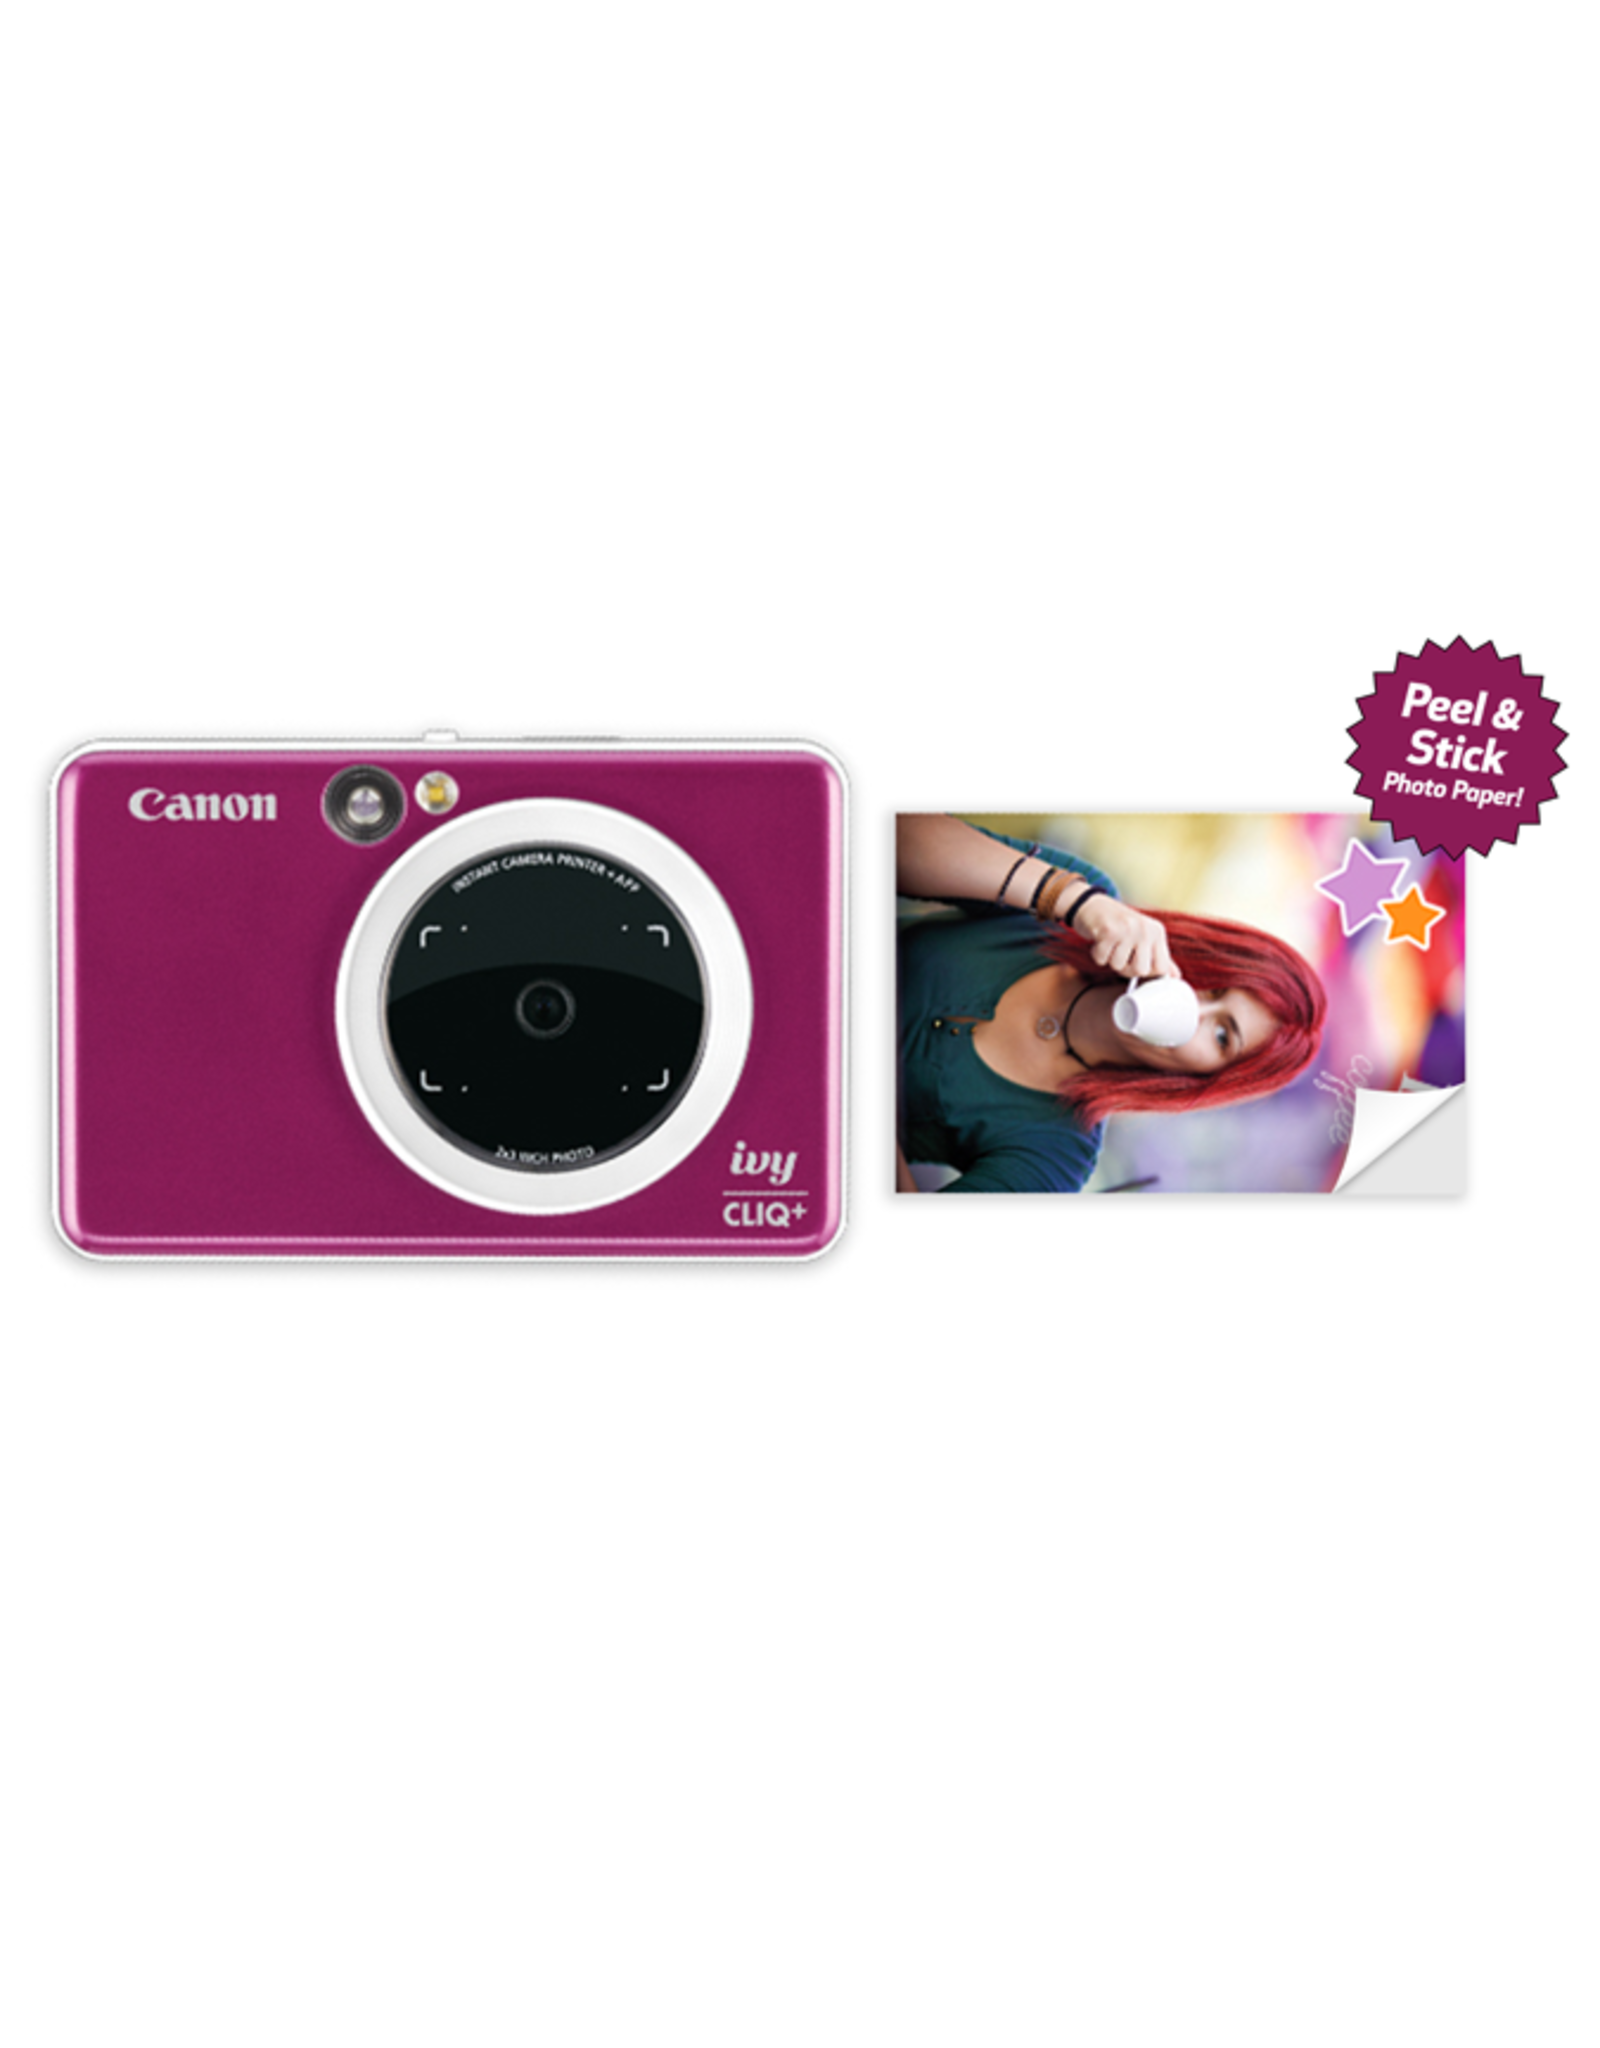 Canon Canon IVY CLIQ+ Instant Camera Printer (Ruby Red)